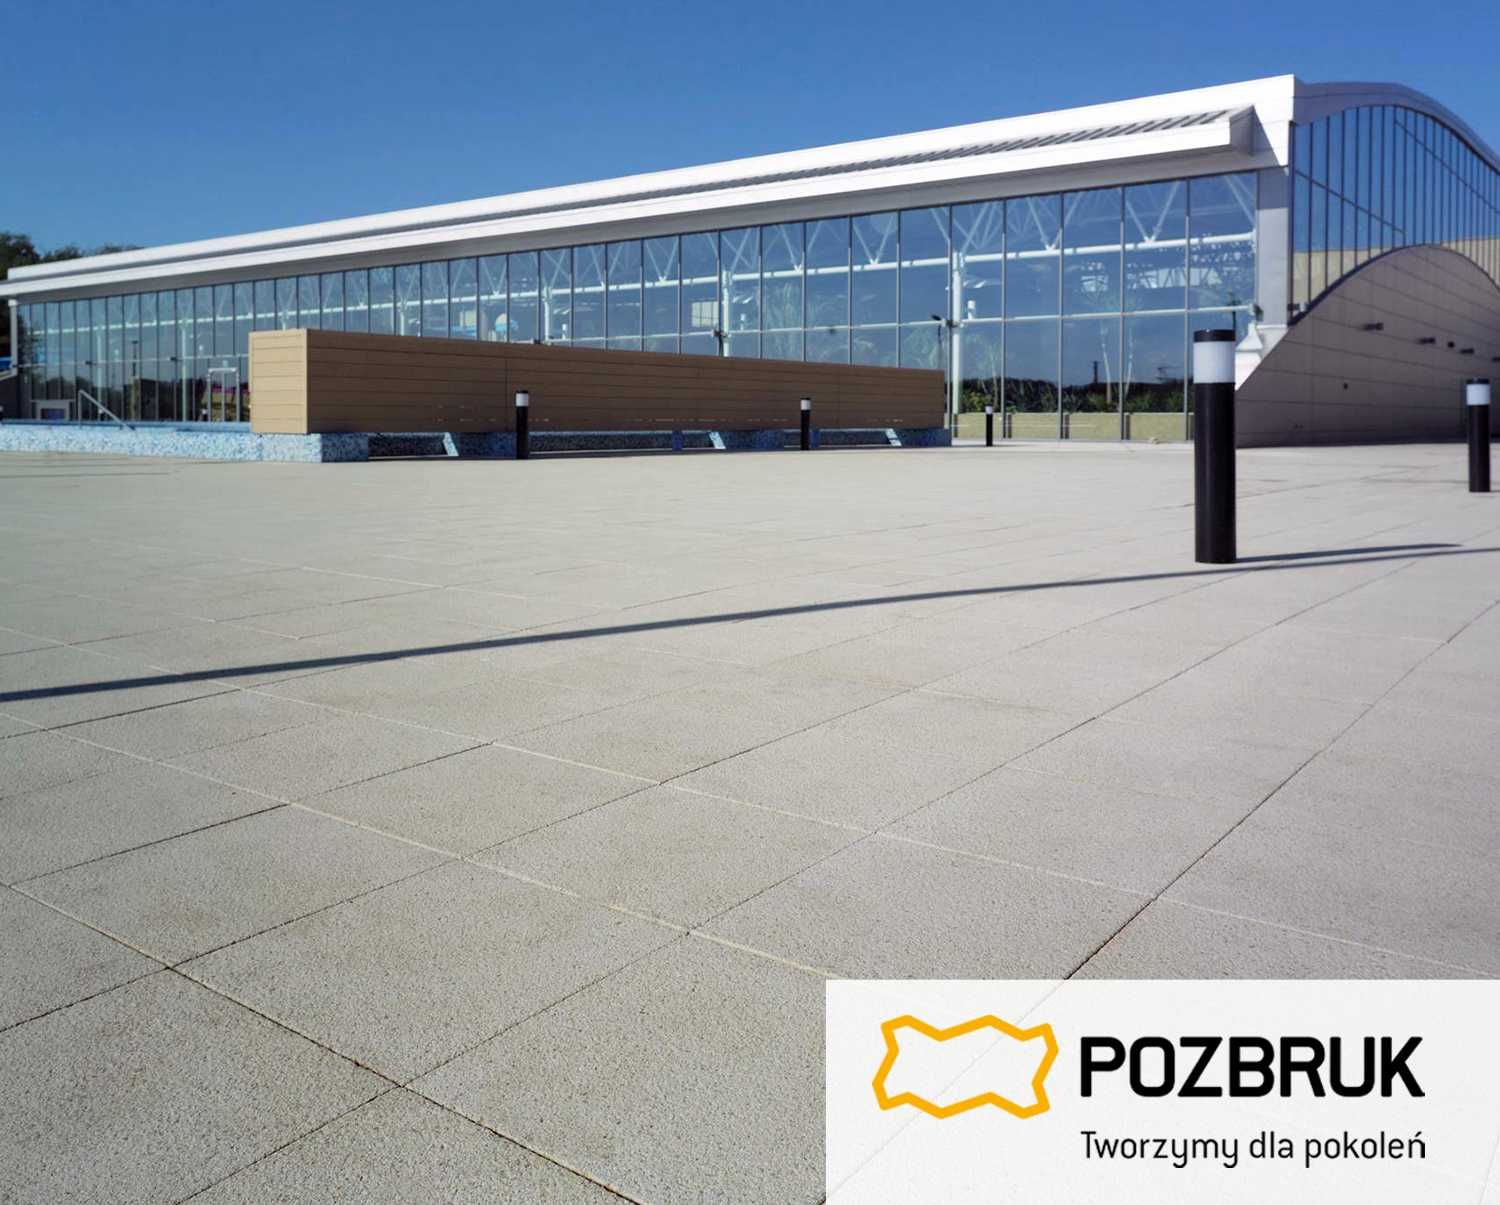 Płyta Pozbruk PRESSTONE Piaskowiec naturalny | 40x40 / h4 cm | OUTLET